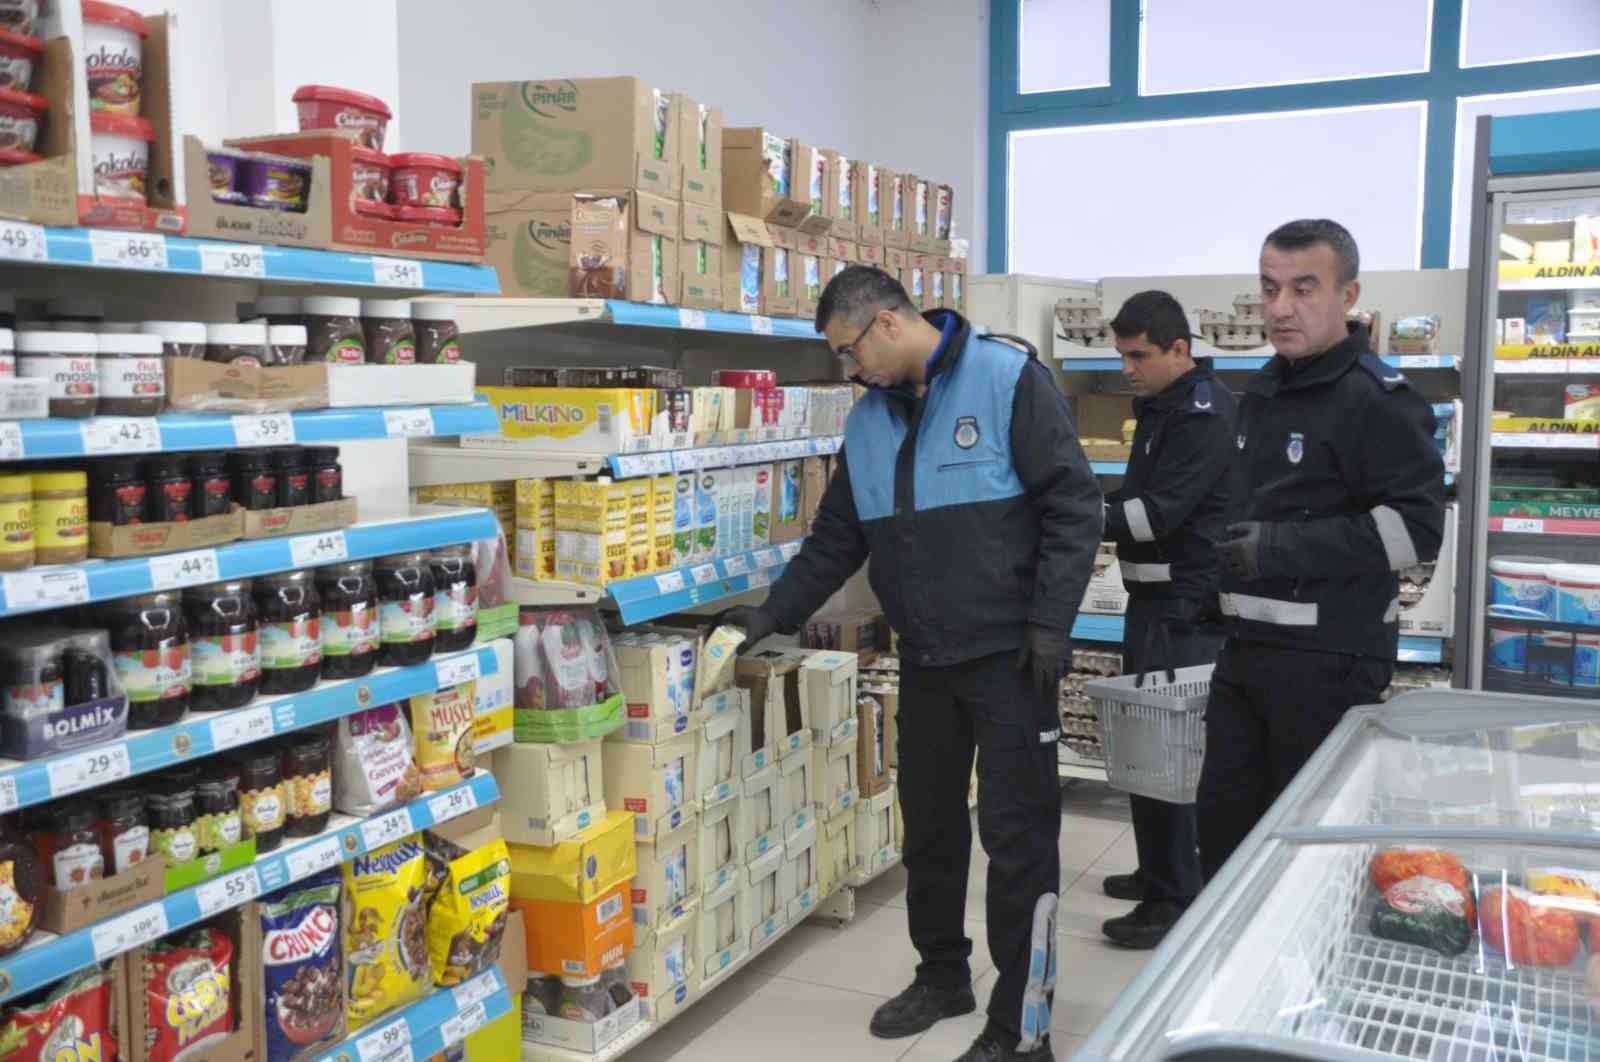 Lapseki’de belediye ekipleri marketlerde fiyat denetimleri yaptı
